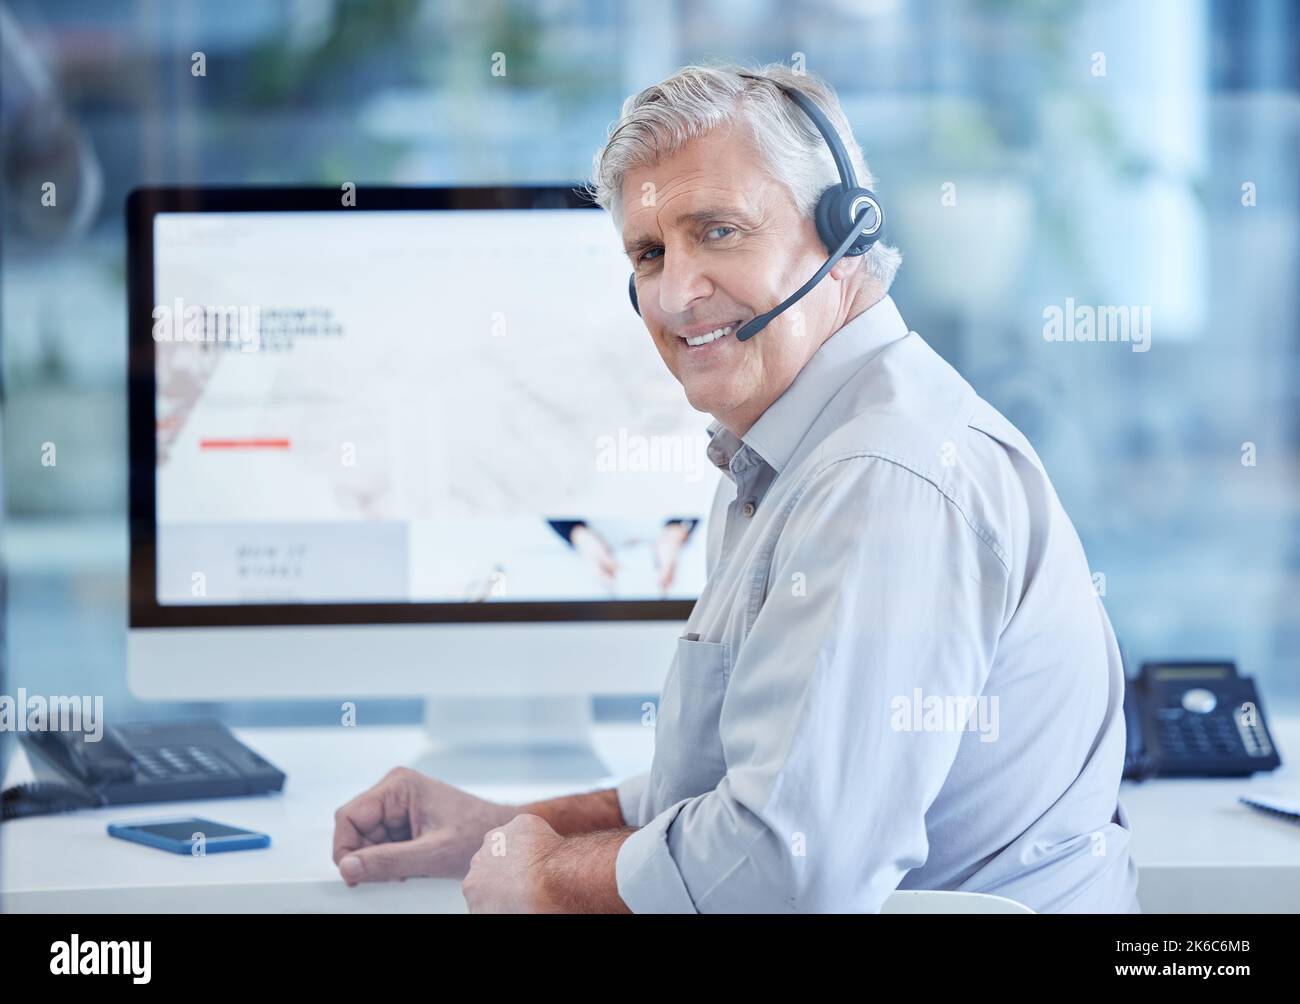 Rufen Sie mich an, wenn Sie noch unsicher sind. Porträt eines reifen Call Center-Agenten, der an einem Computer in einem Büro arbeitet. Stockfoto